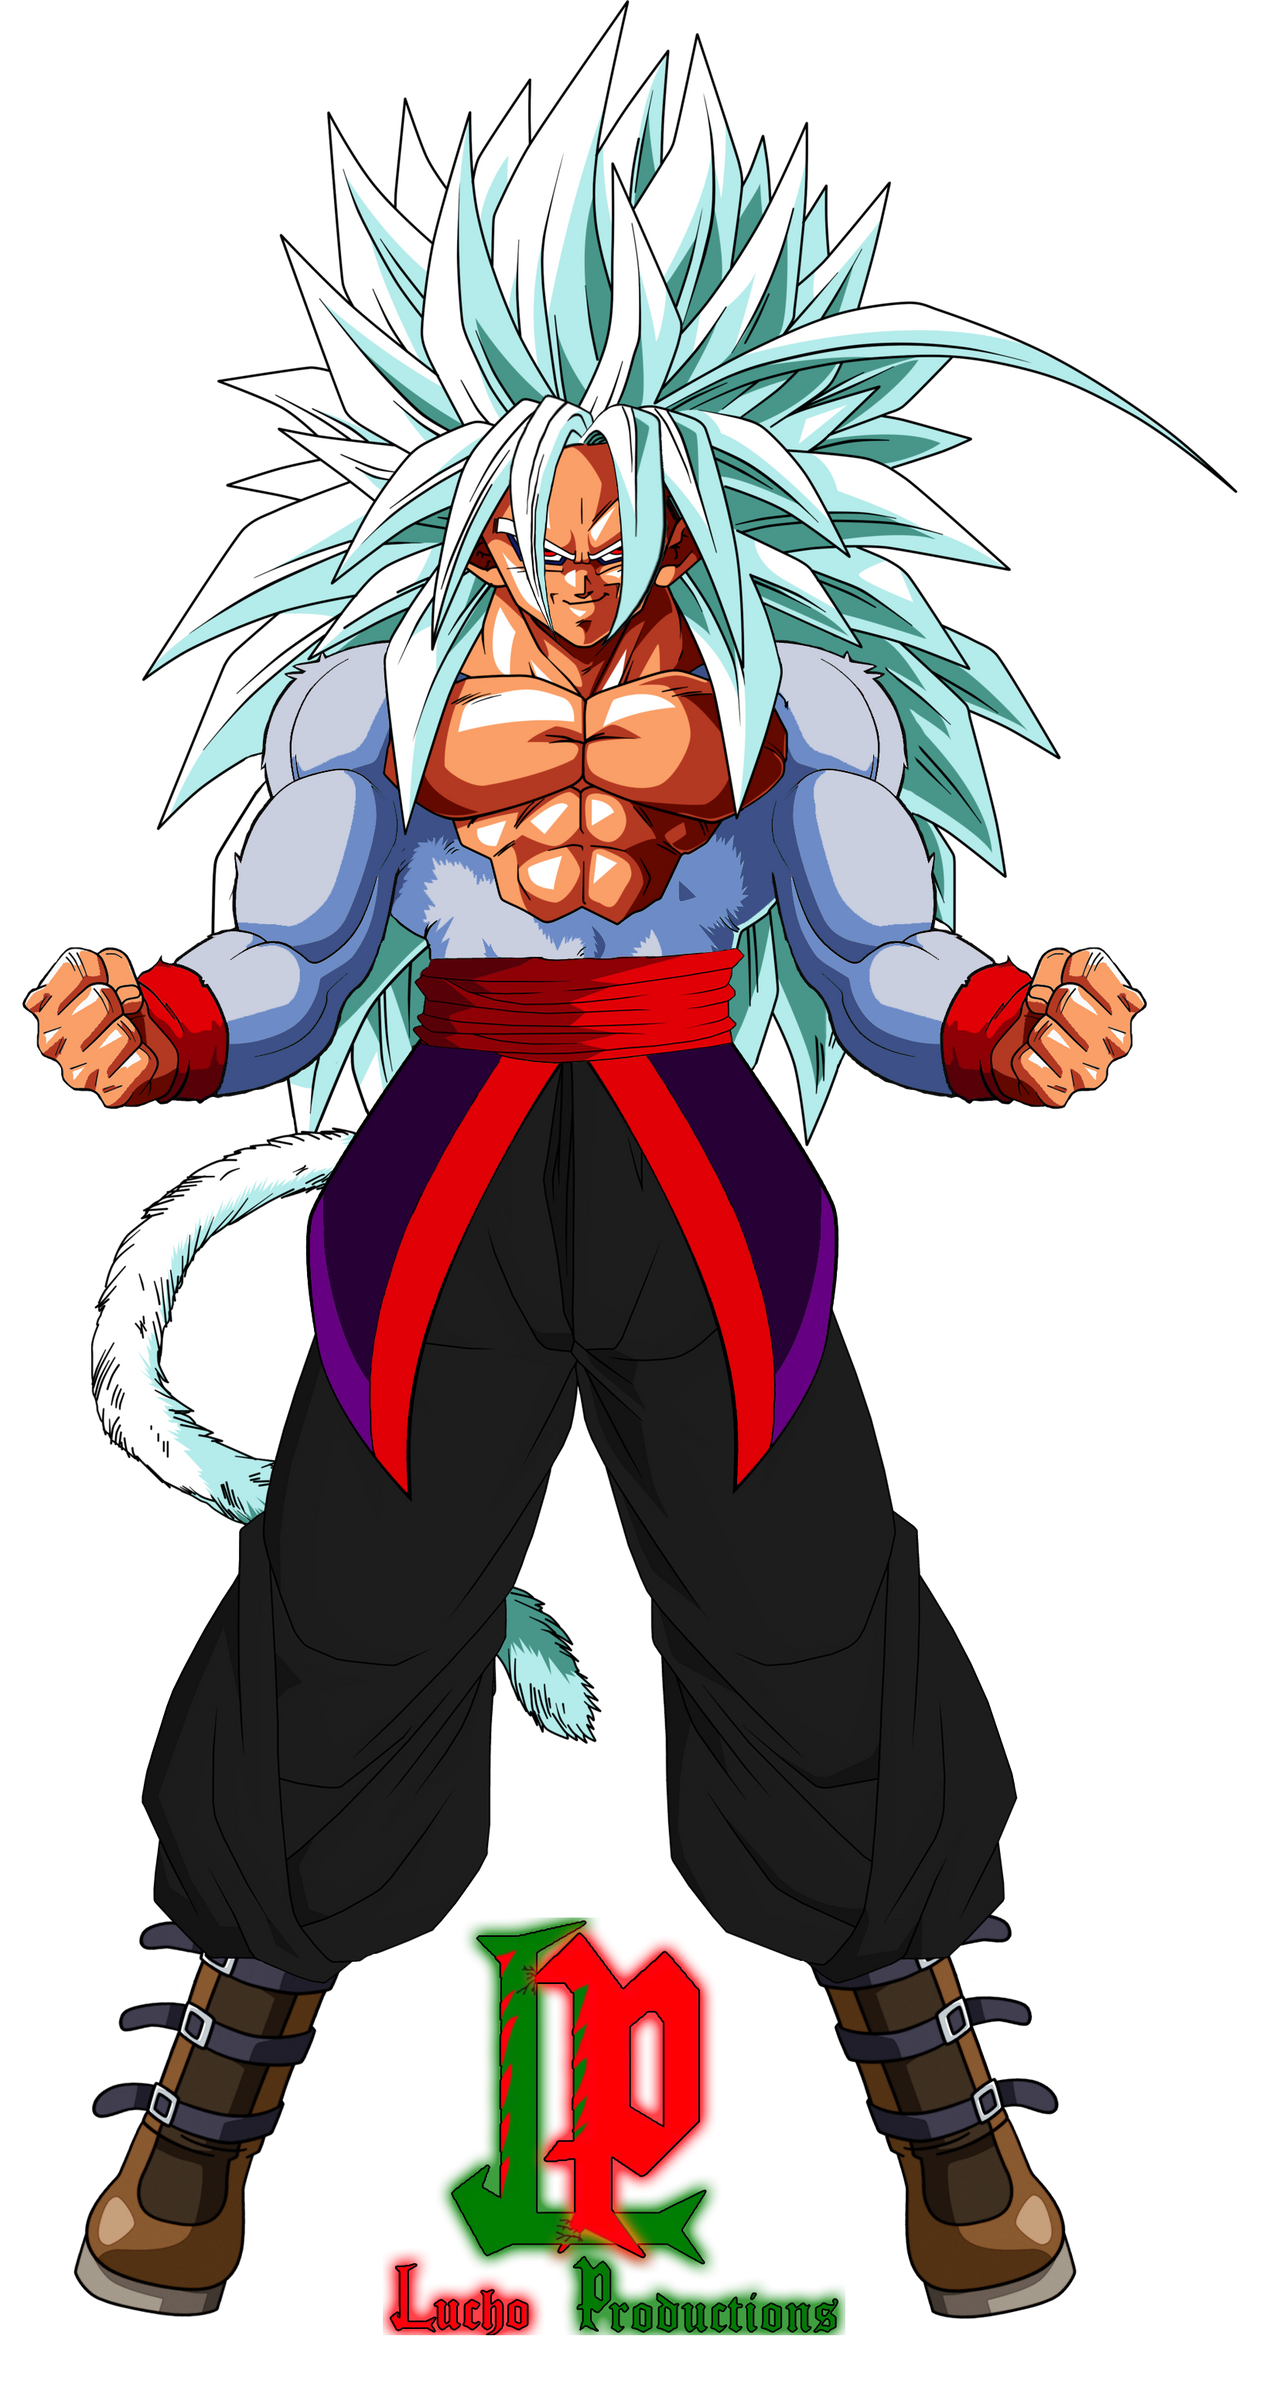 Goku SSJ5 Super Saiyan 5 by BrandonKuhn24469 on DeviantArt